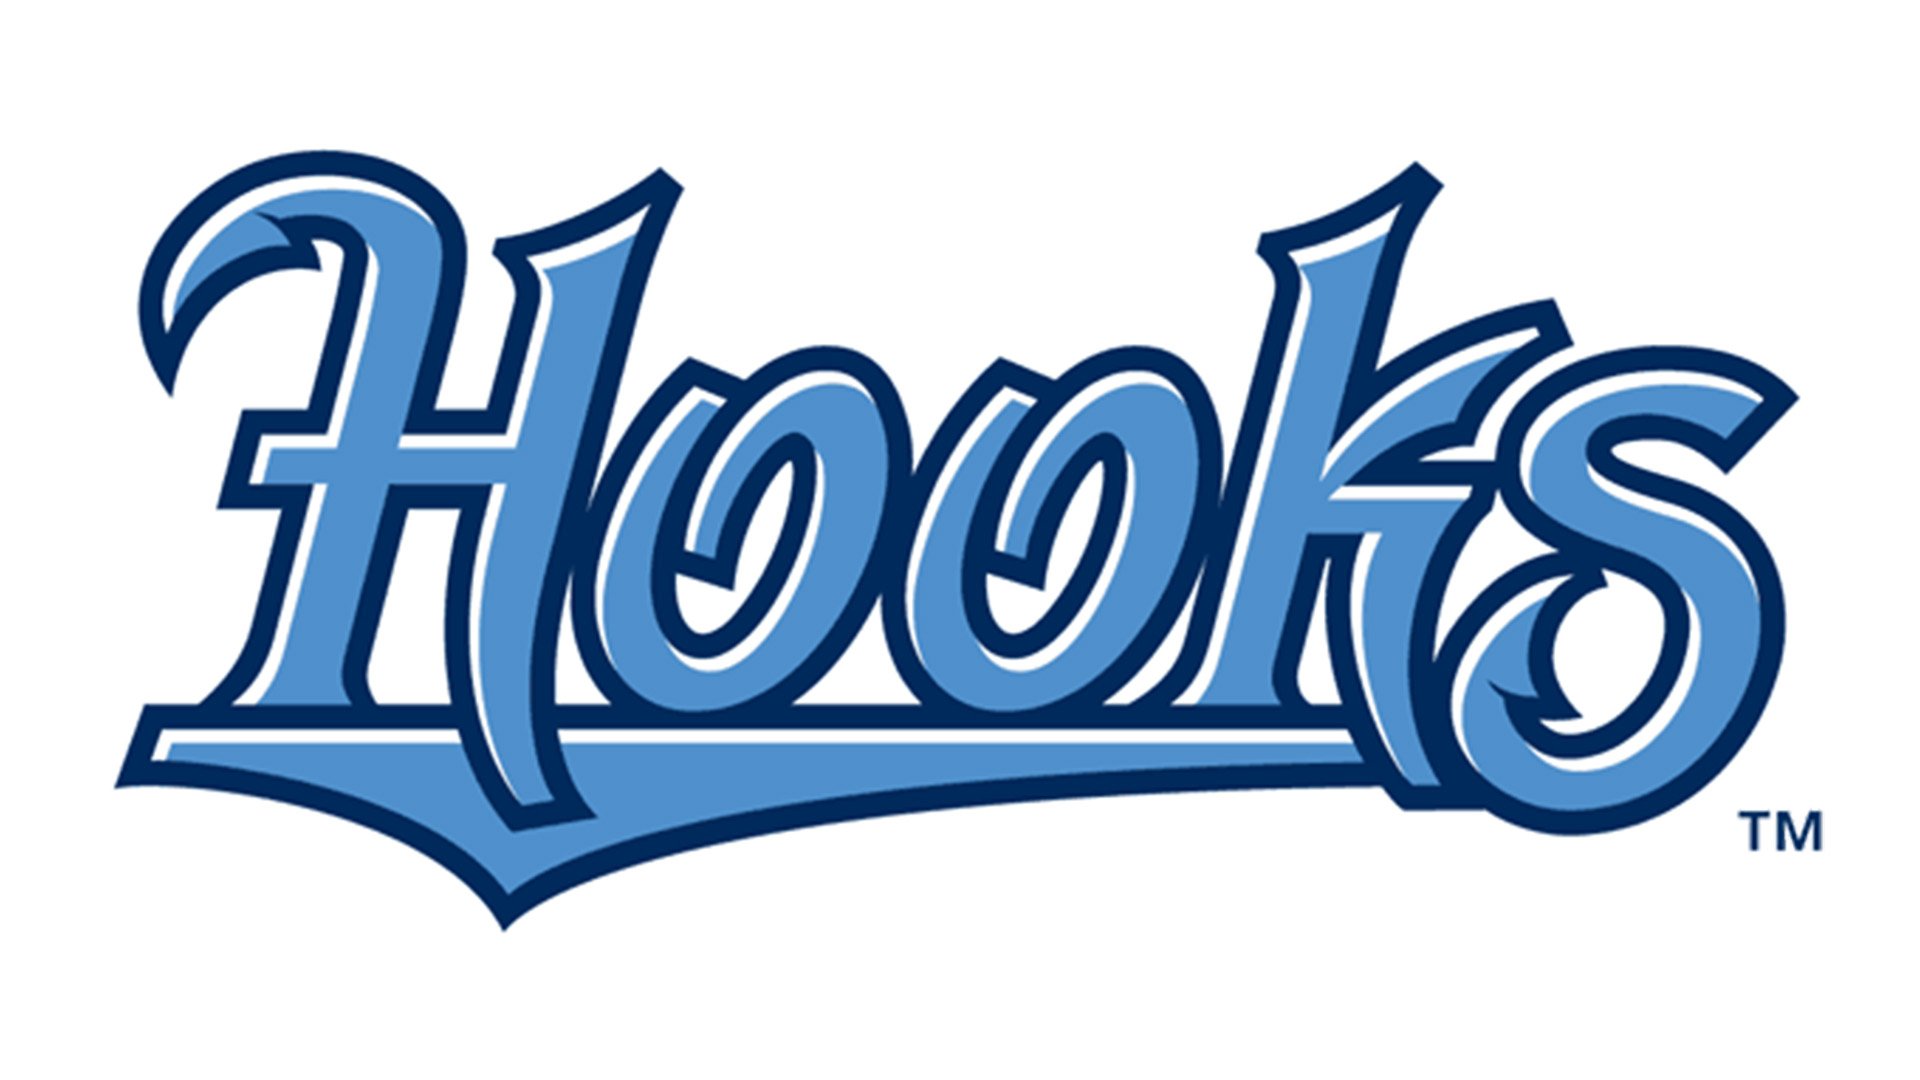 Hooks logo